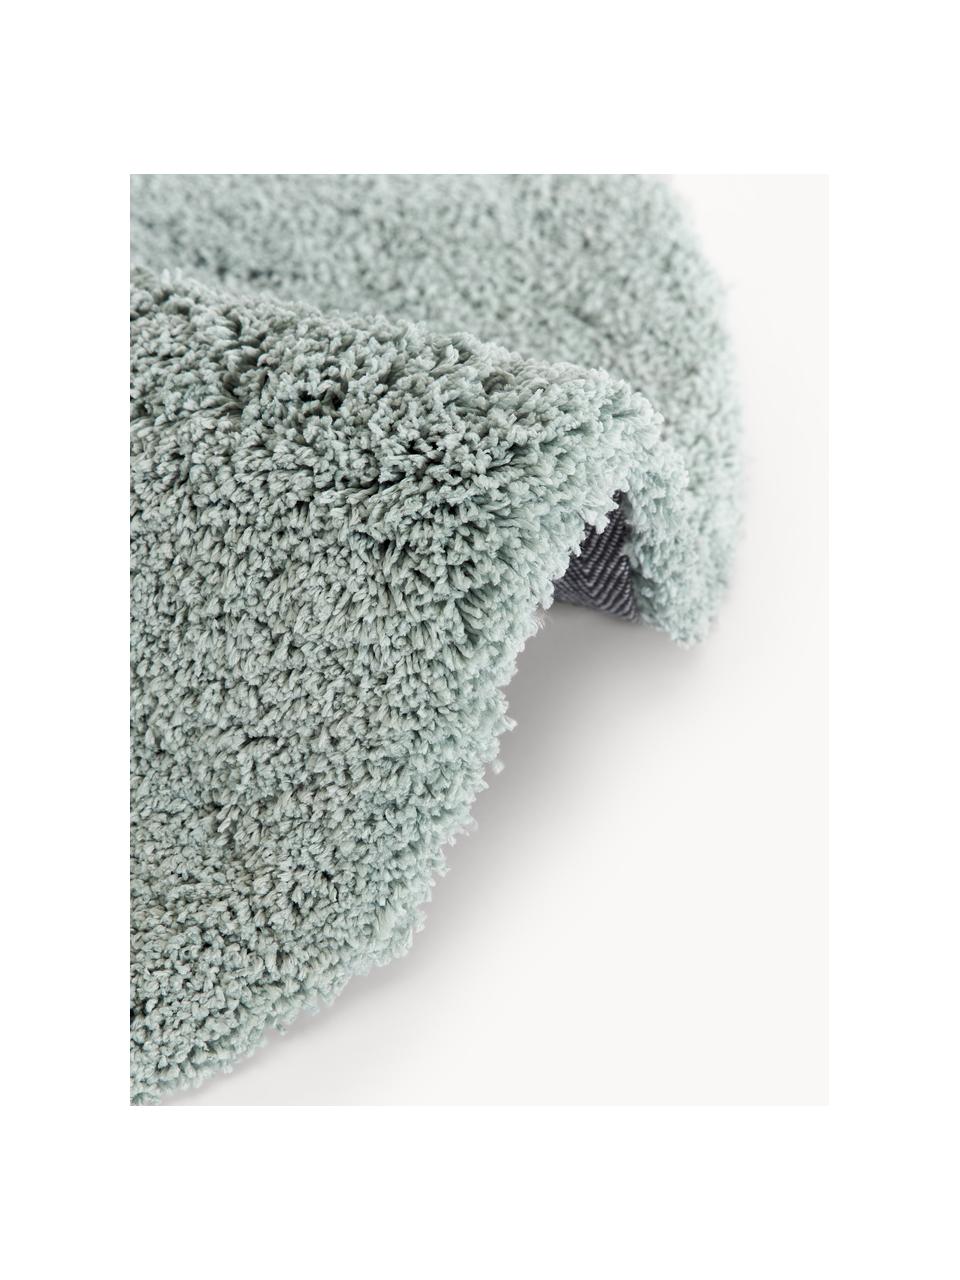 Flauschiger runder Hochflor-Teppich Leighton, Flor: Mikrofaser (100 % Polyest, Salbeigrün, Ø 200 cm (Grösse L)